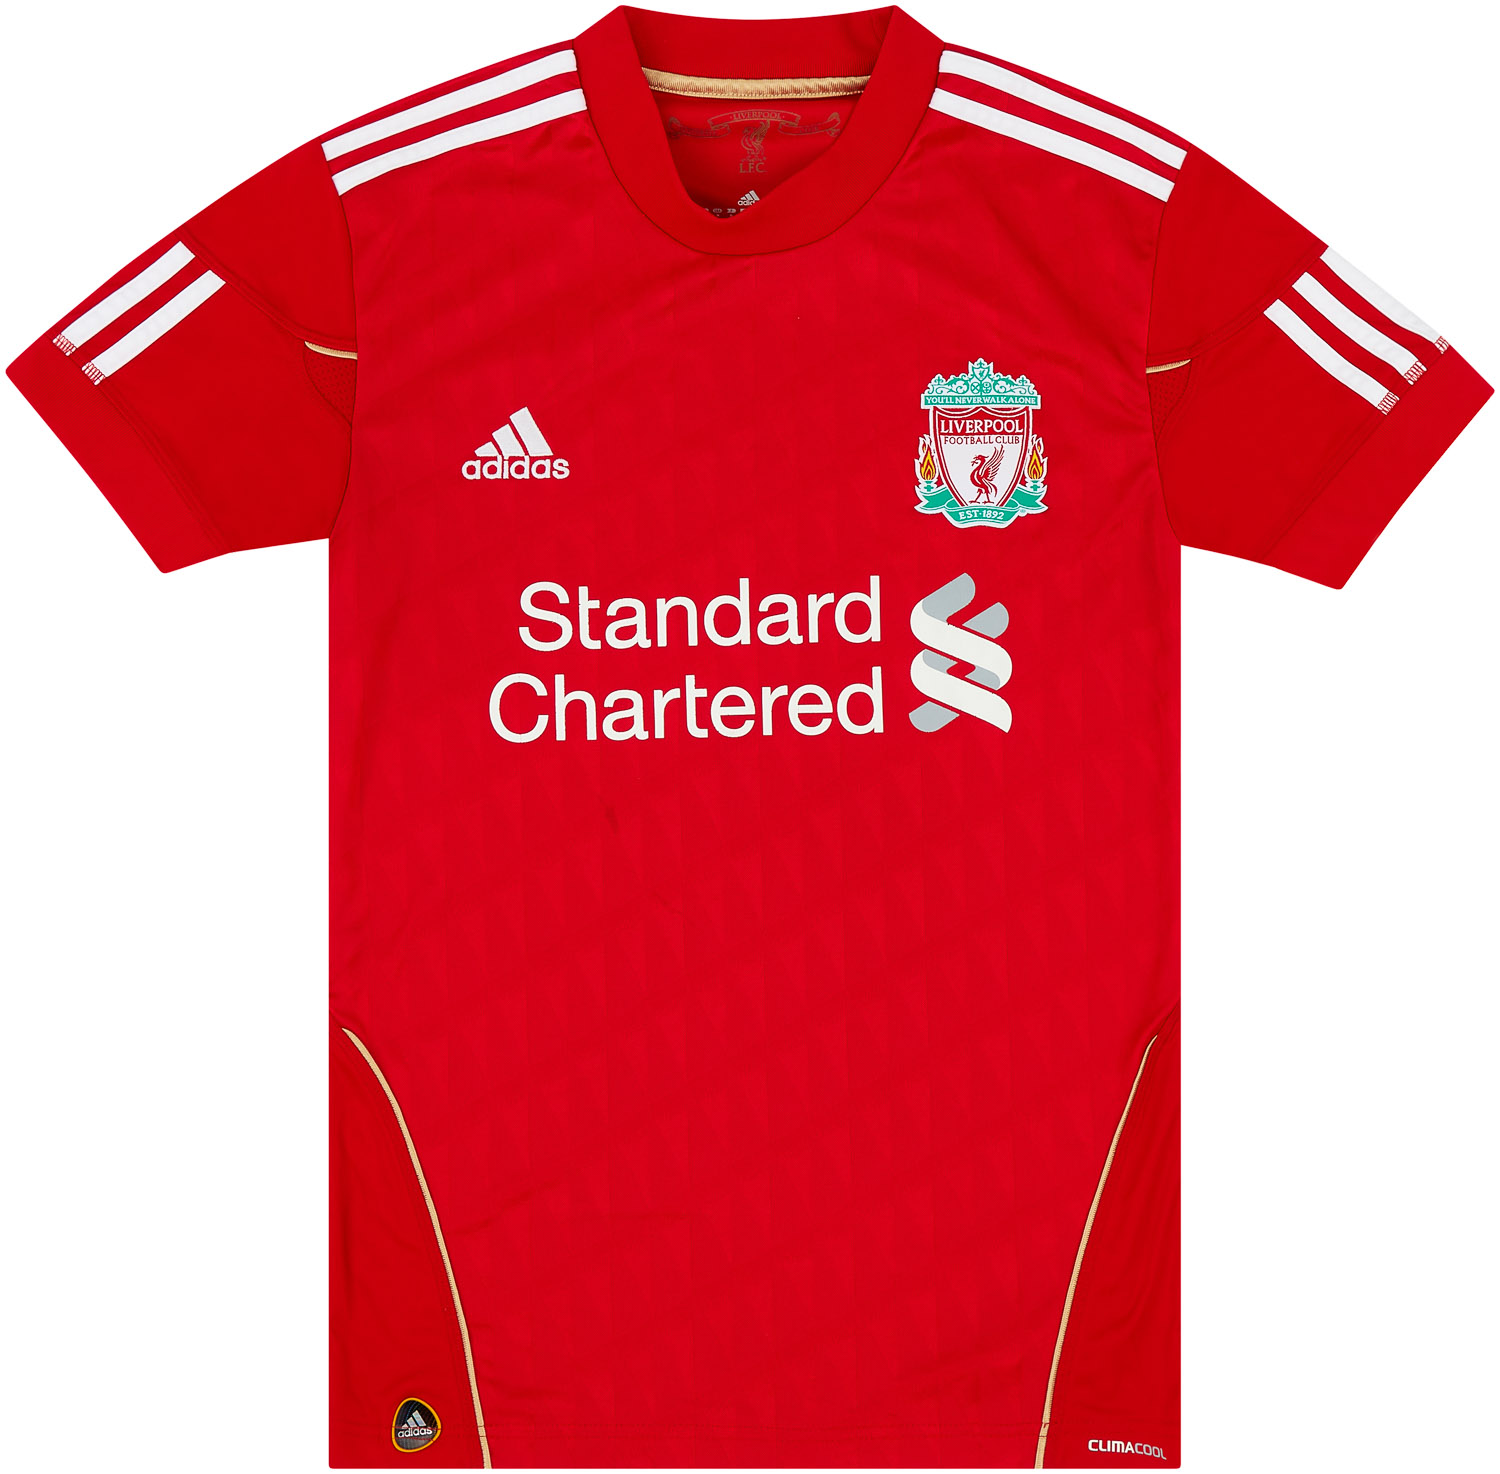 2010-12 Liverpool Home Shirt Women's ()